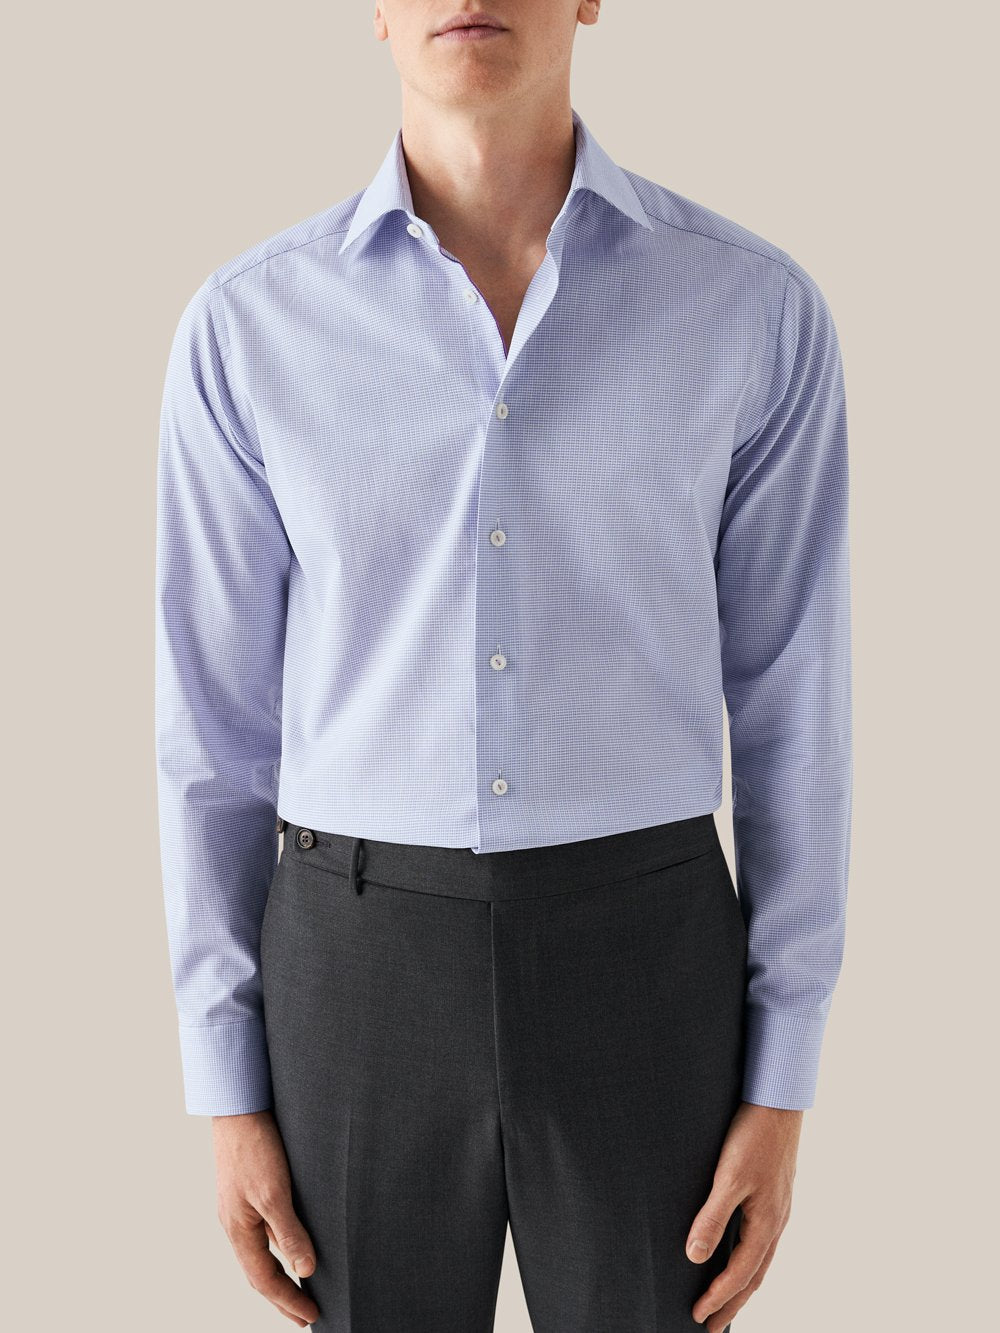 ETON Microcheck Shirt SC-Contemporary Fit SKY BLUE